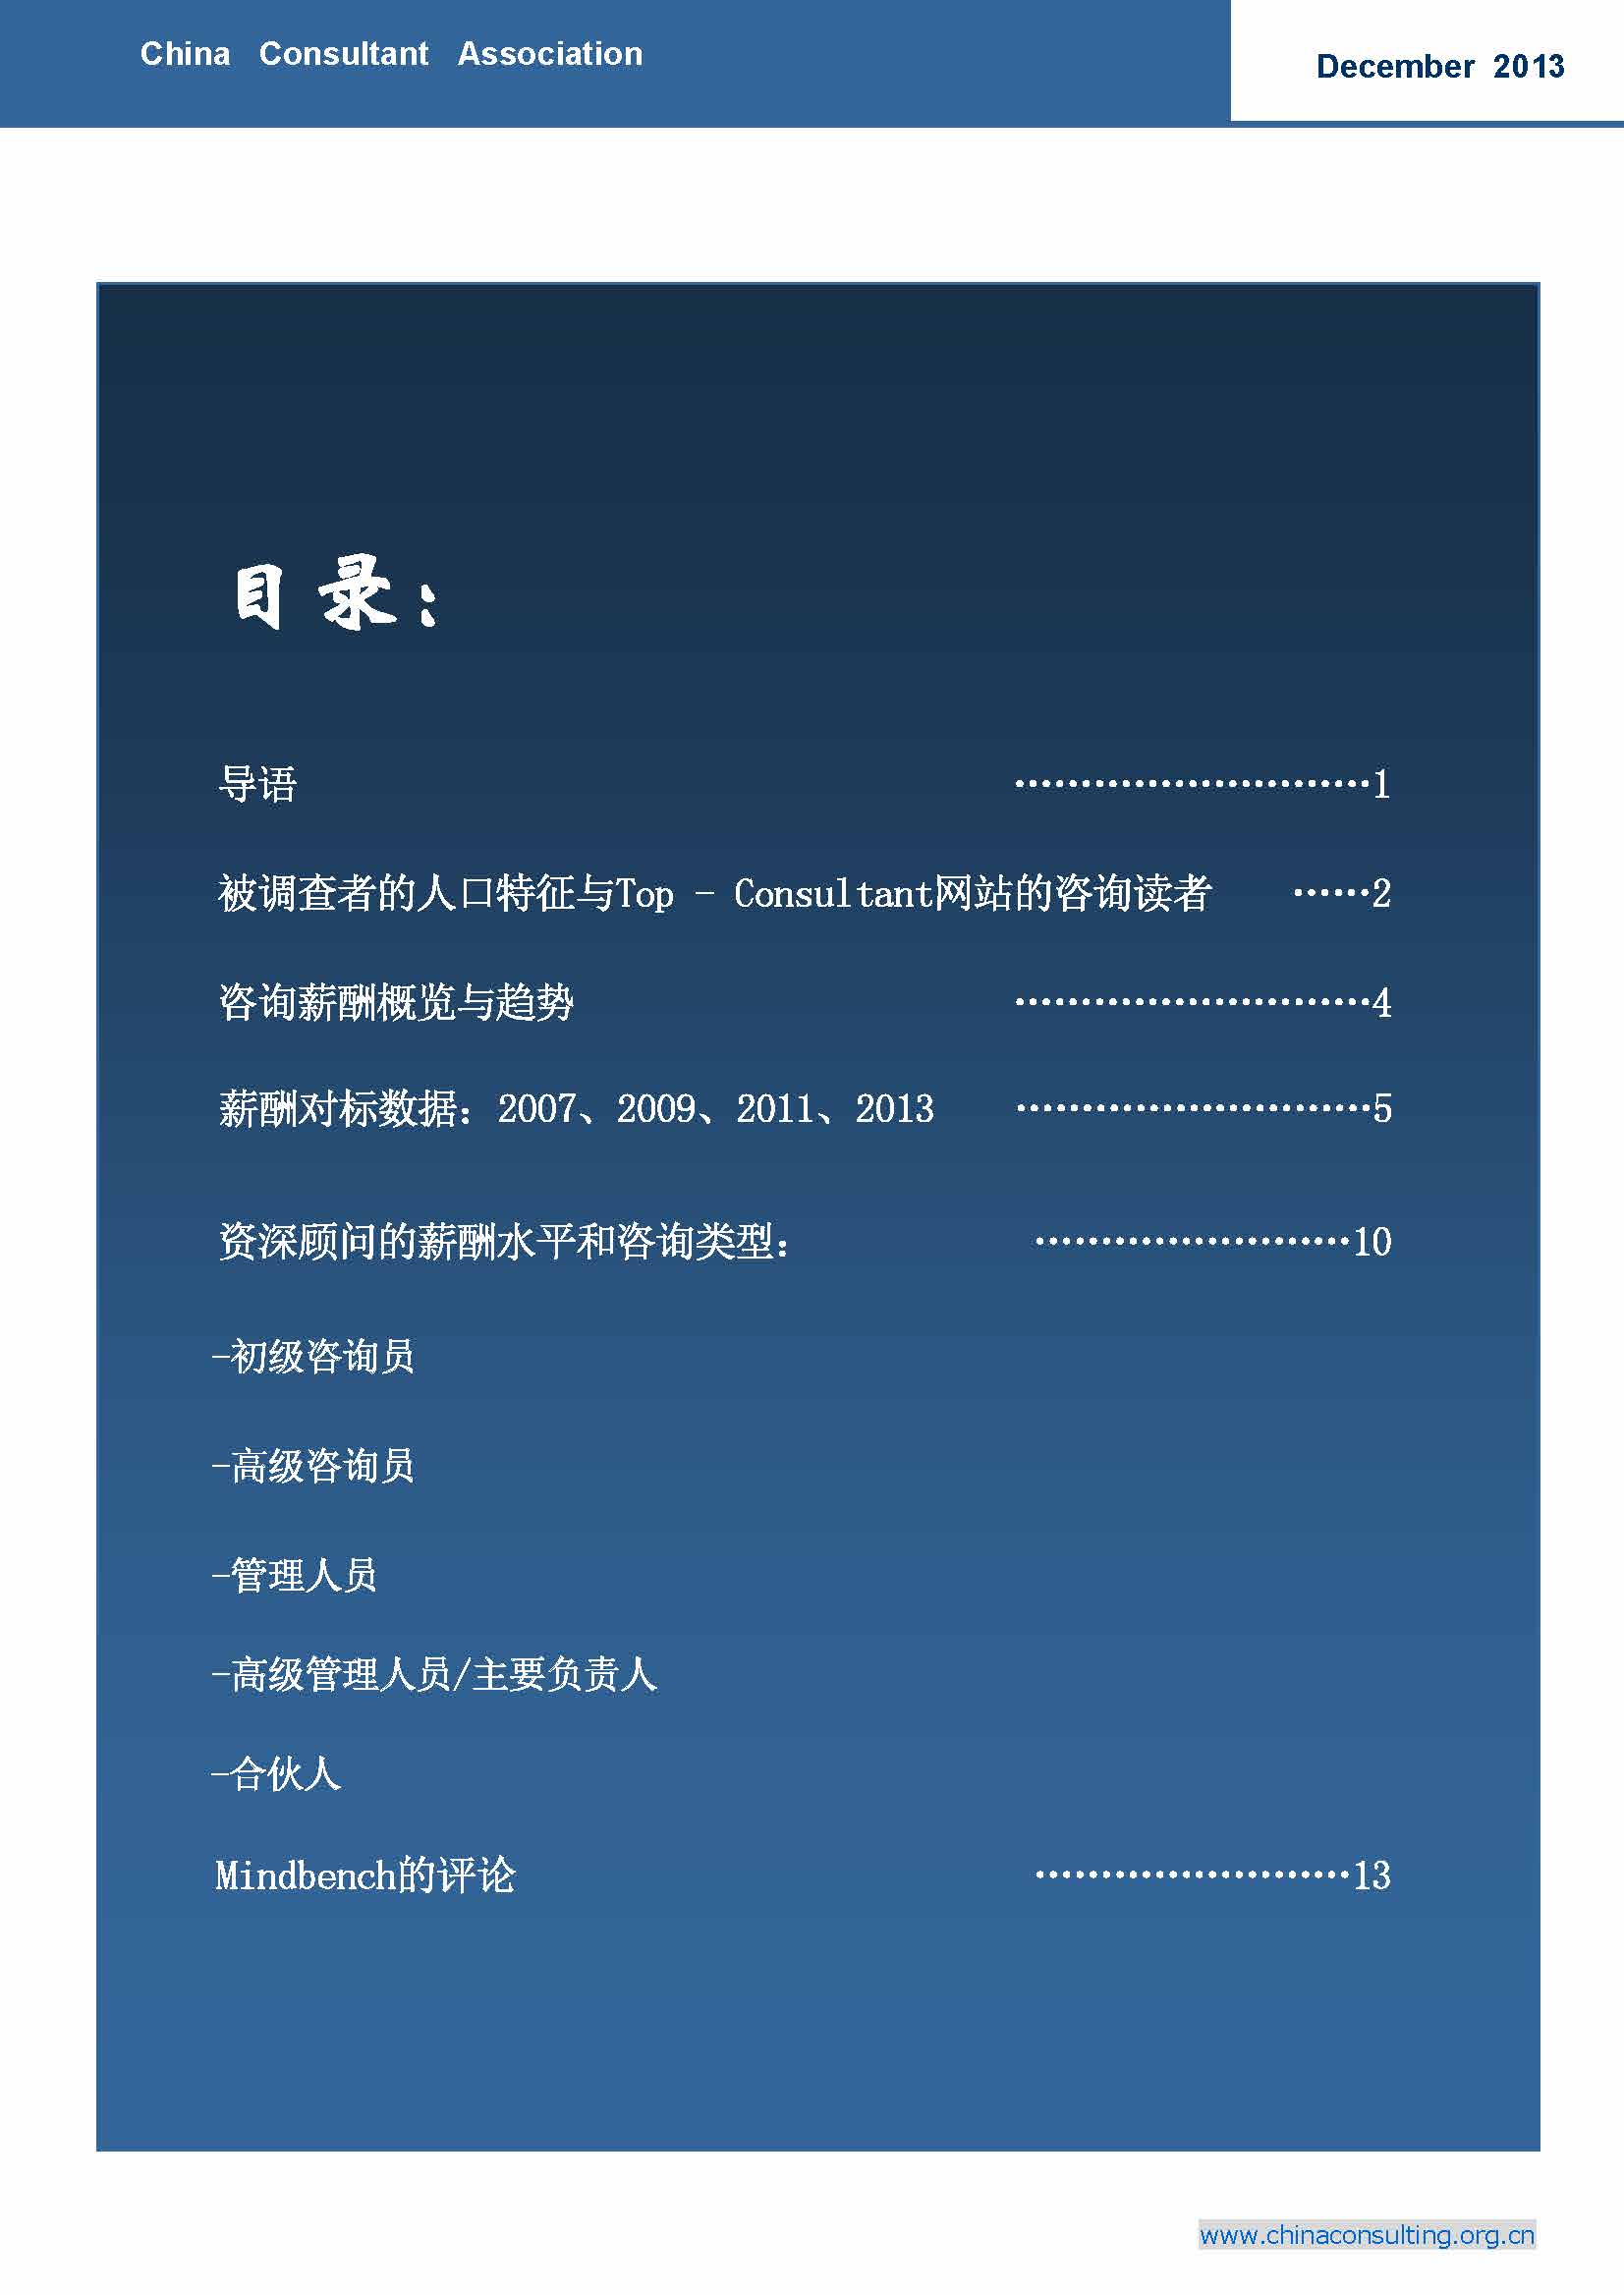 16中国科技咨询协会国际快讯（第十六期）_页面_02.jpg